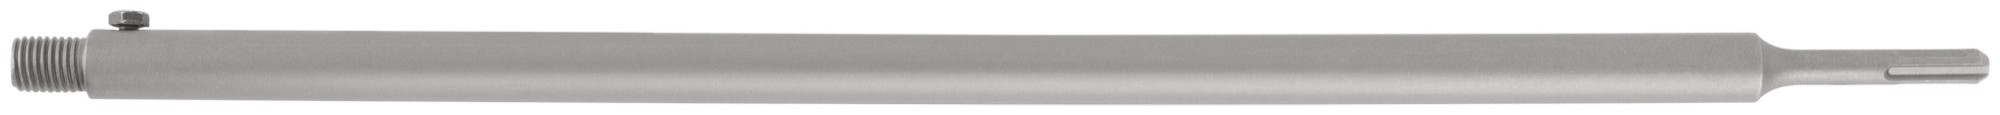 Удлинитель с хвостовиком SDS-PLUS для коронок по бетону алмазных, резьба М16, длина 530 мм